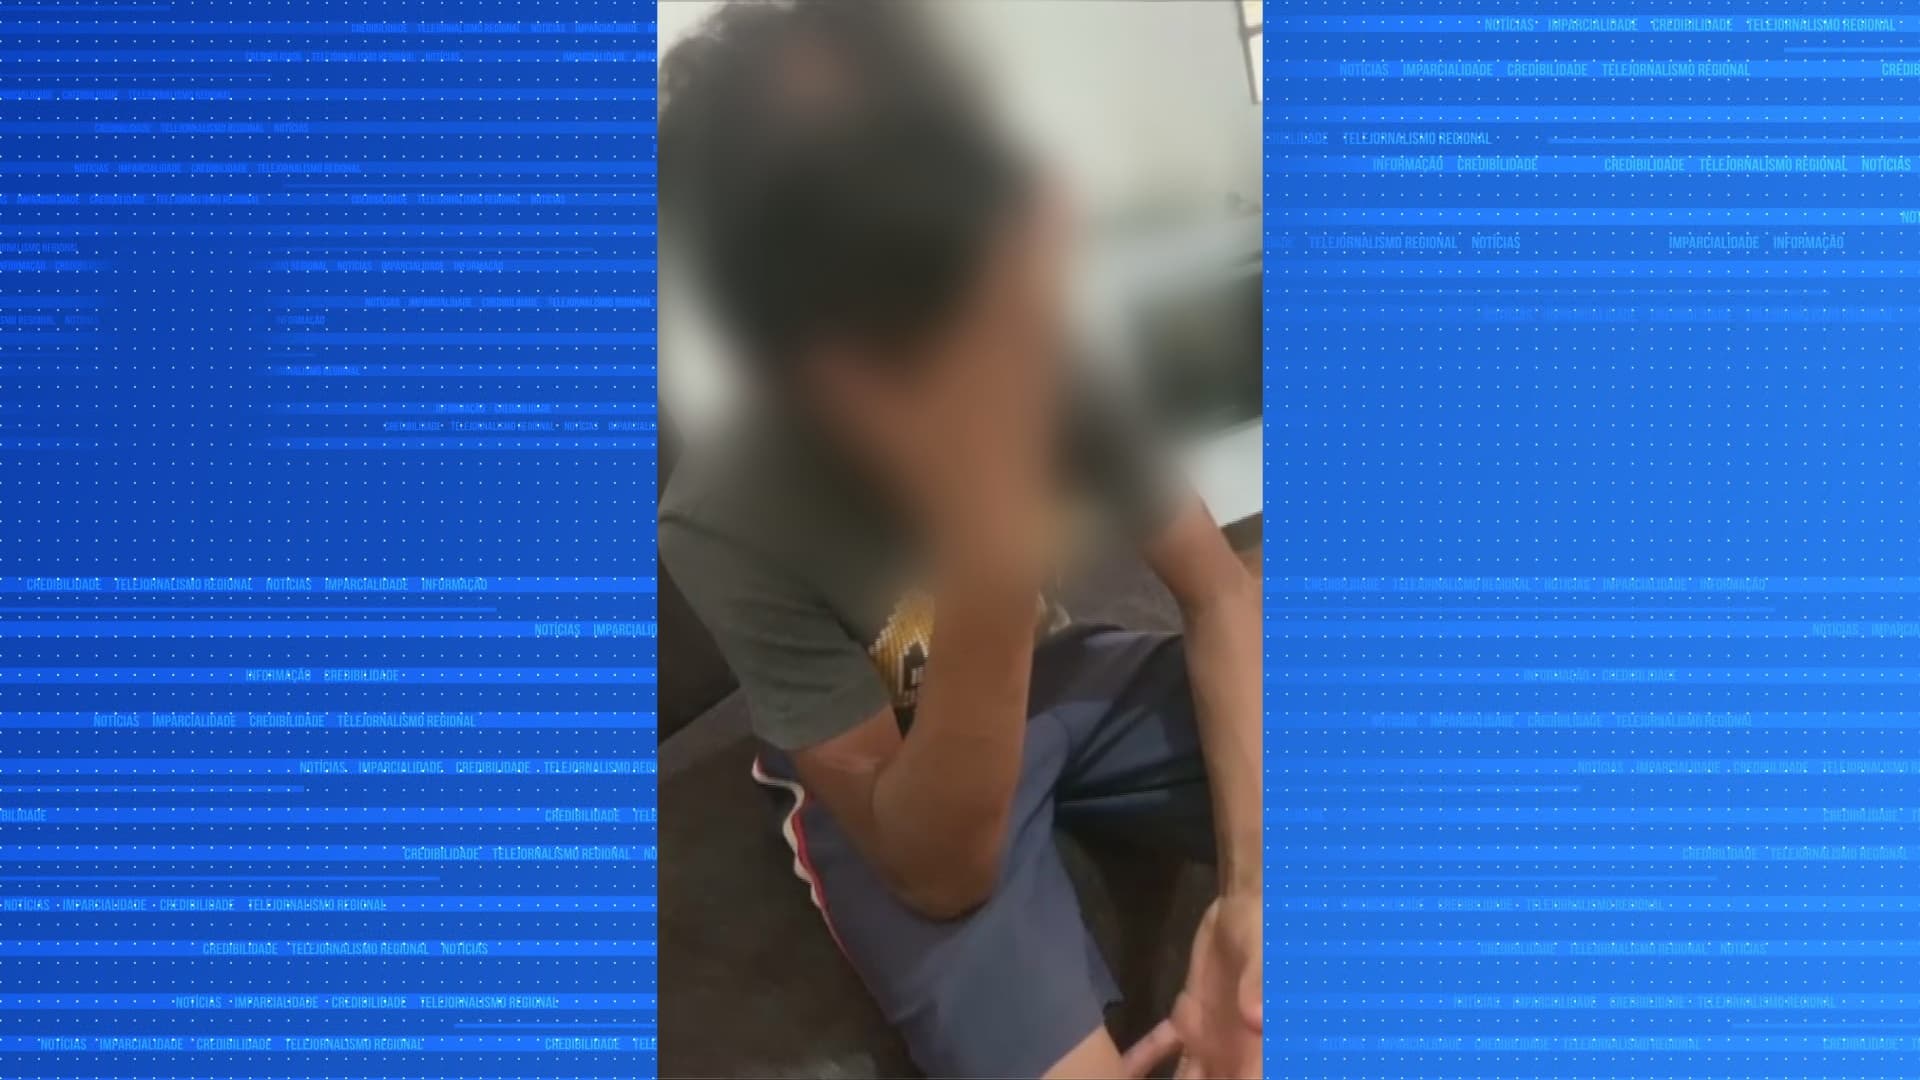 policia-investiga-caso-de-tortura-contra-menino-de-11-anos-tv-sorocaba